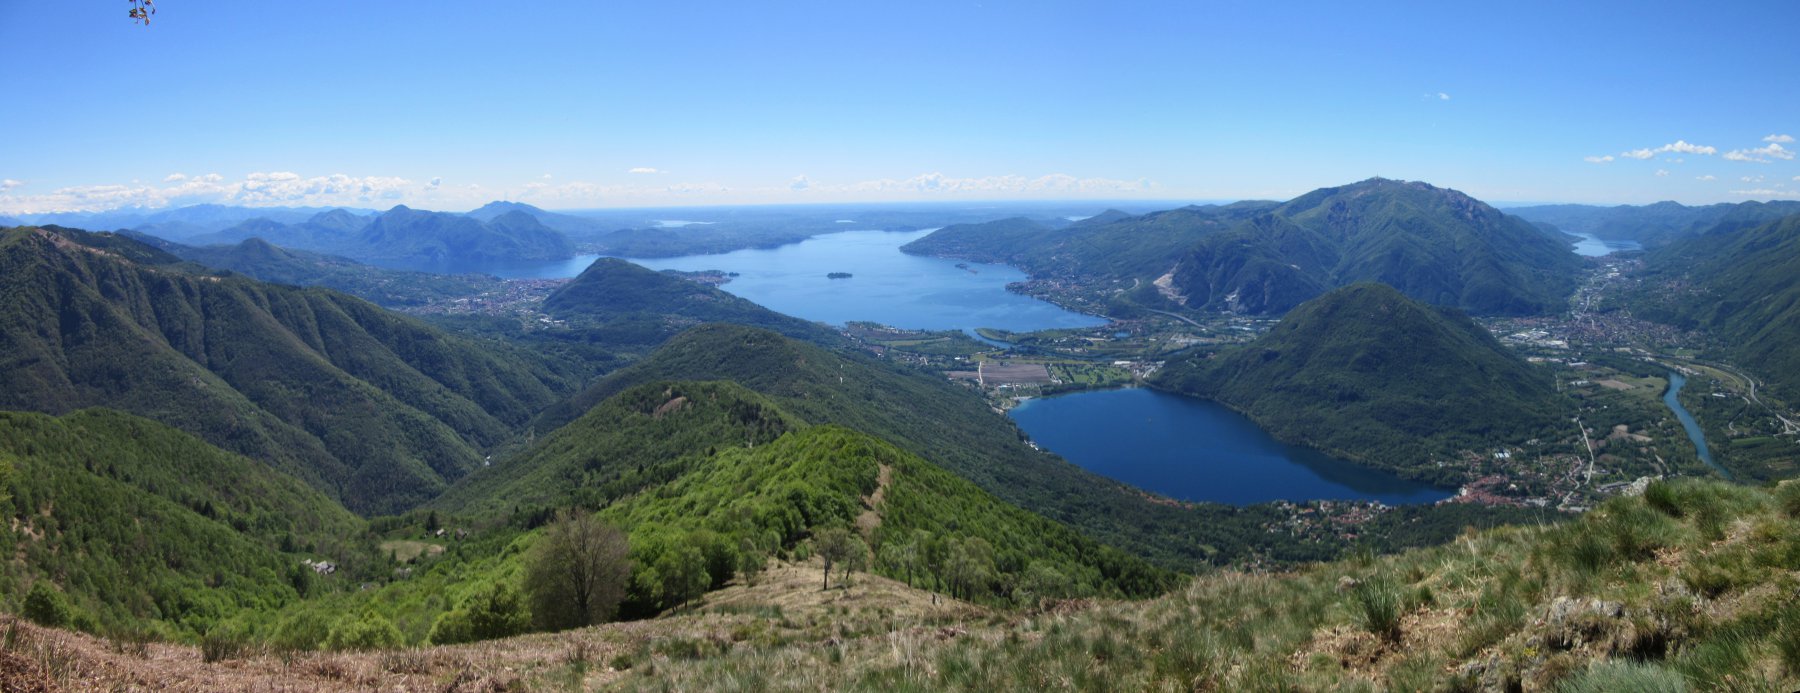 Splendida vista dal Monte Faiè: Lago Maggiore, Mergozzo Orta e Varese